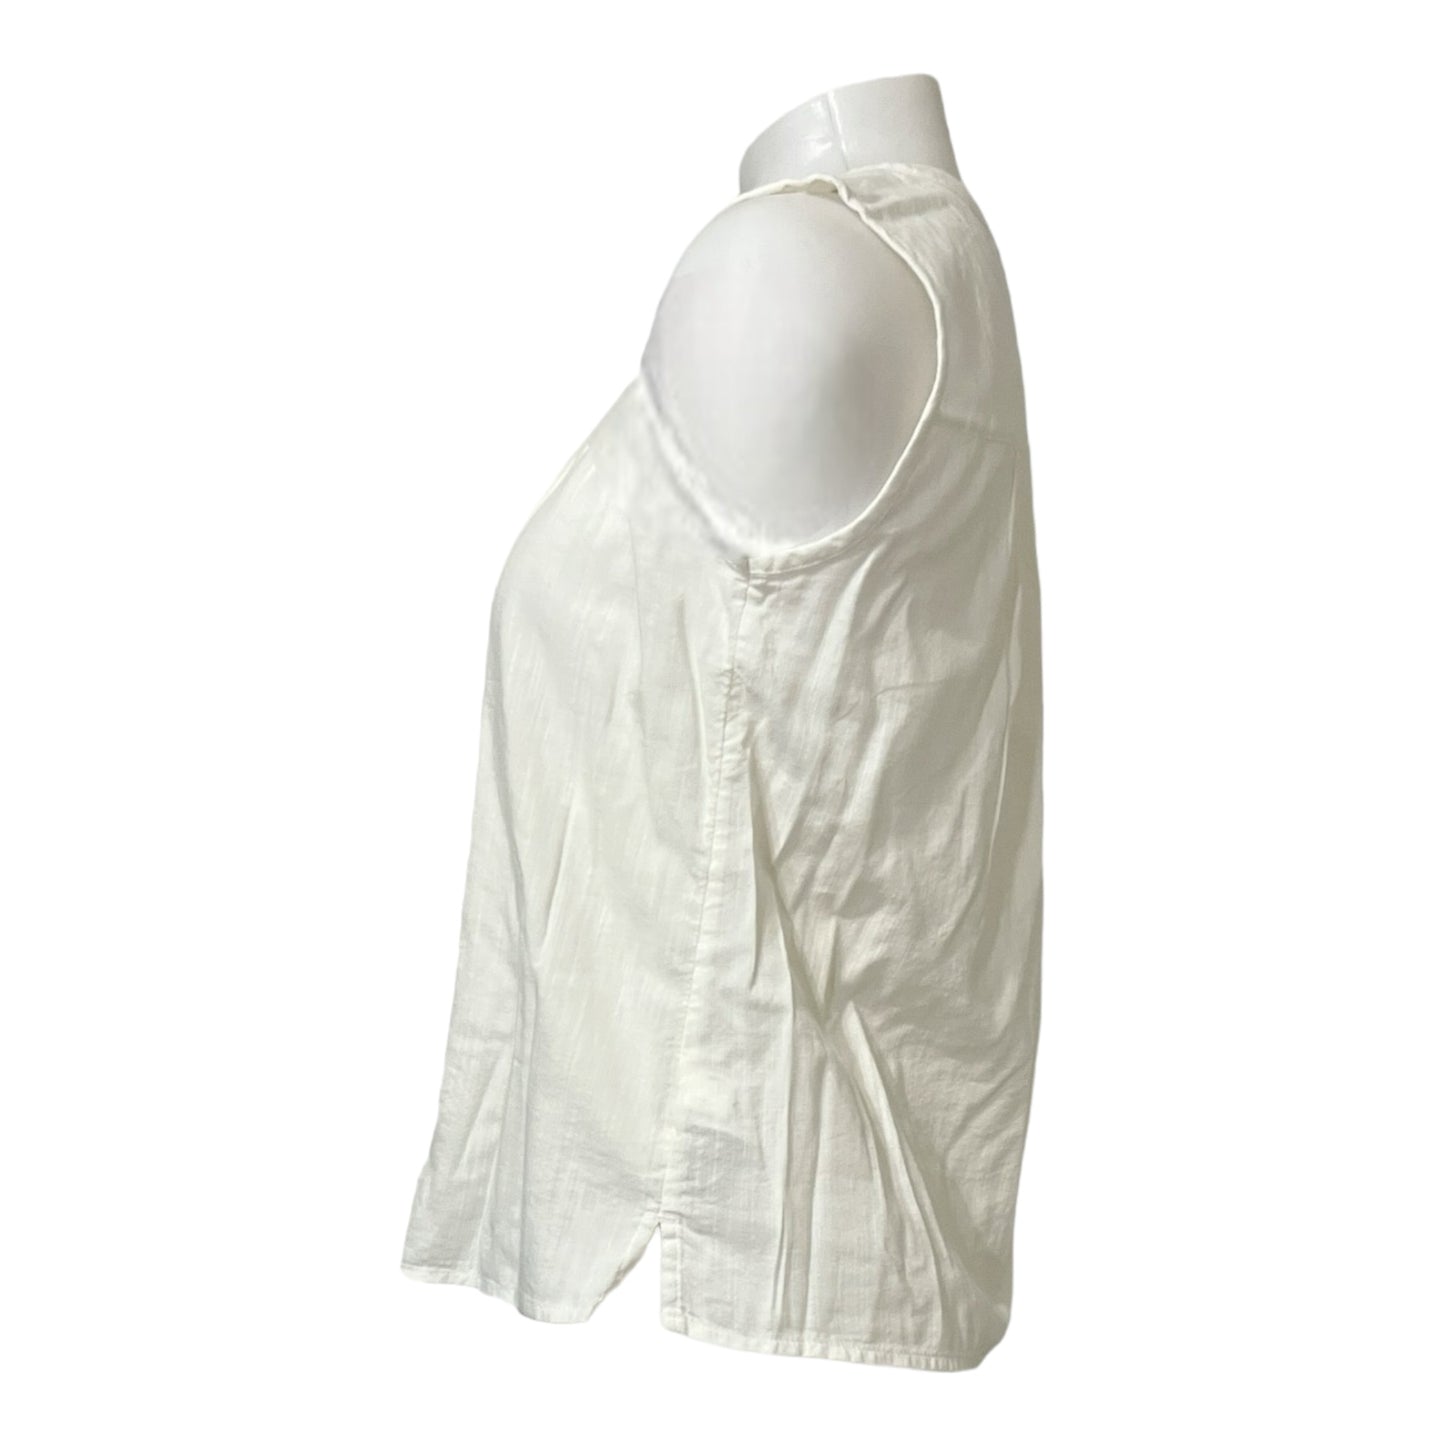 Elegancia Sutil con un Toque Casual: Blusa Blanca Old Navy con Cuello Chino y Botones Centrales